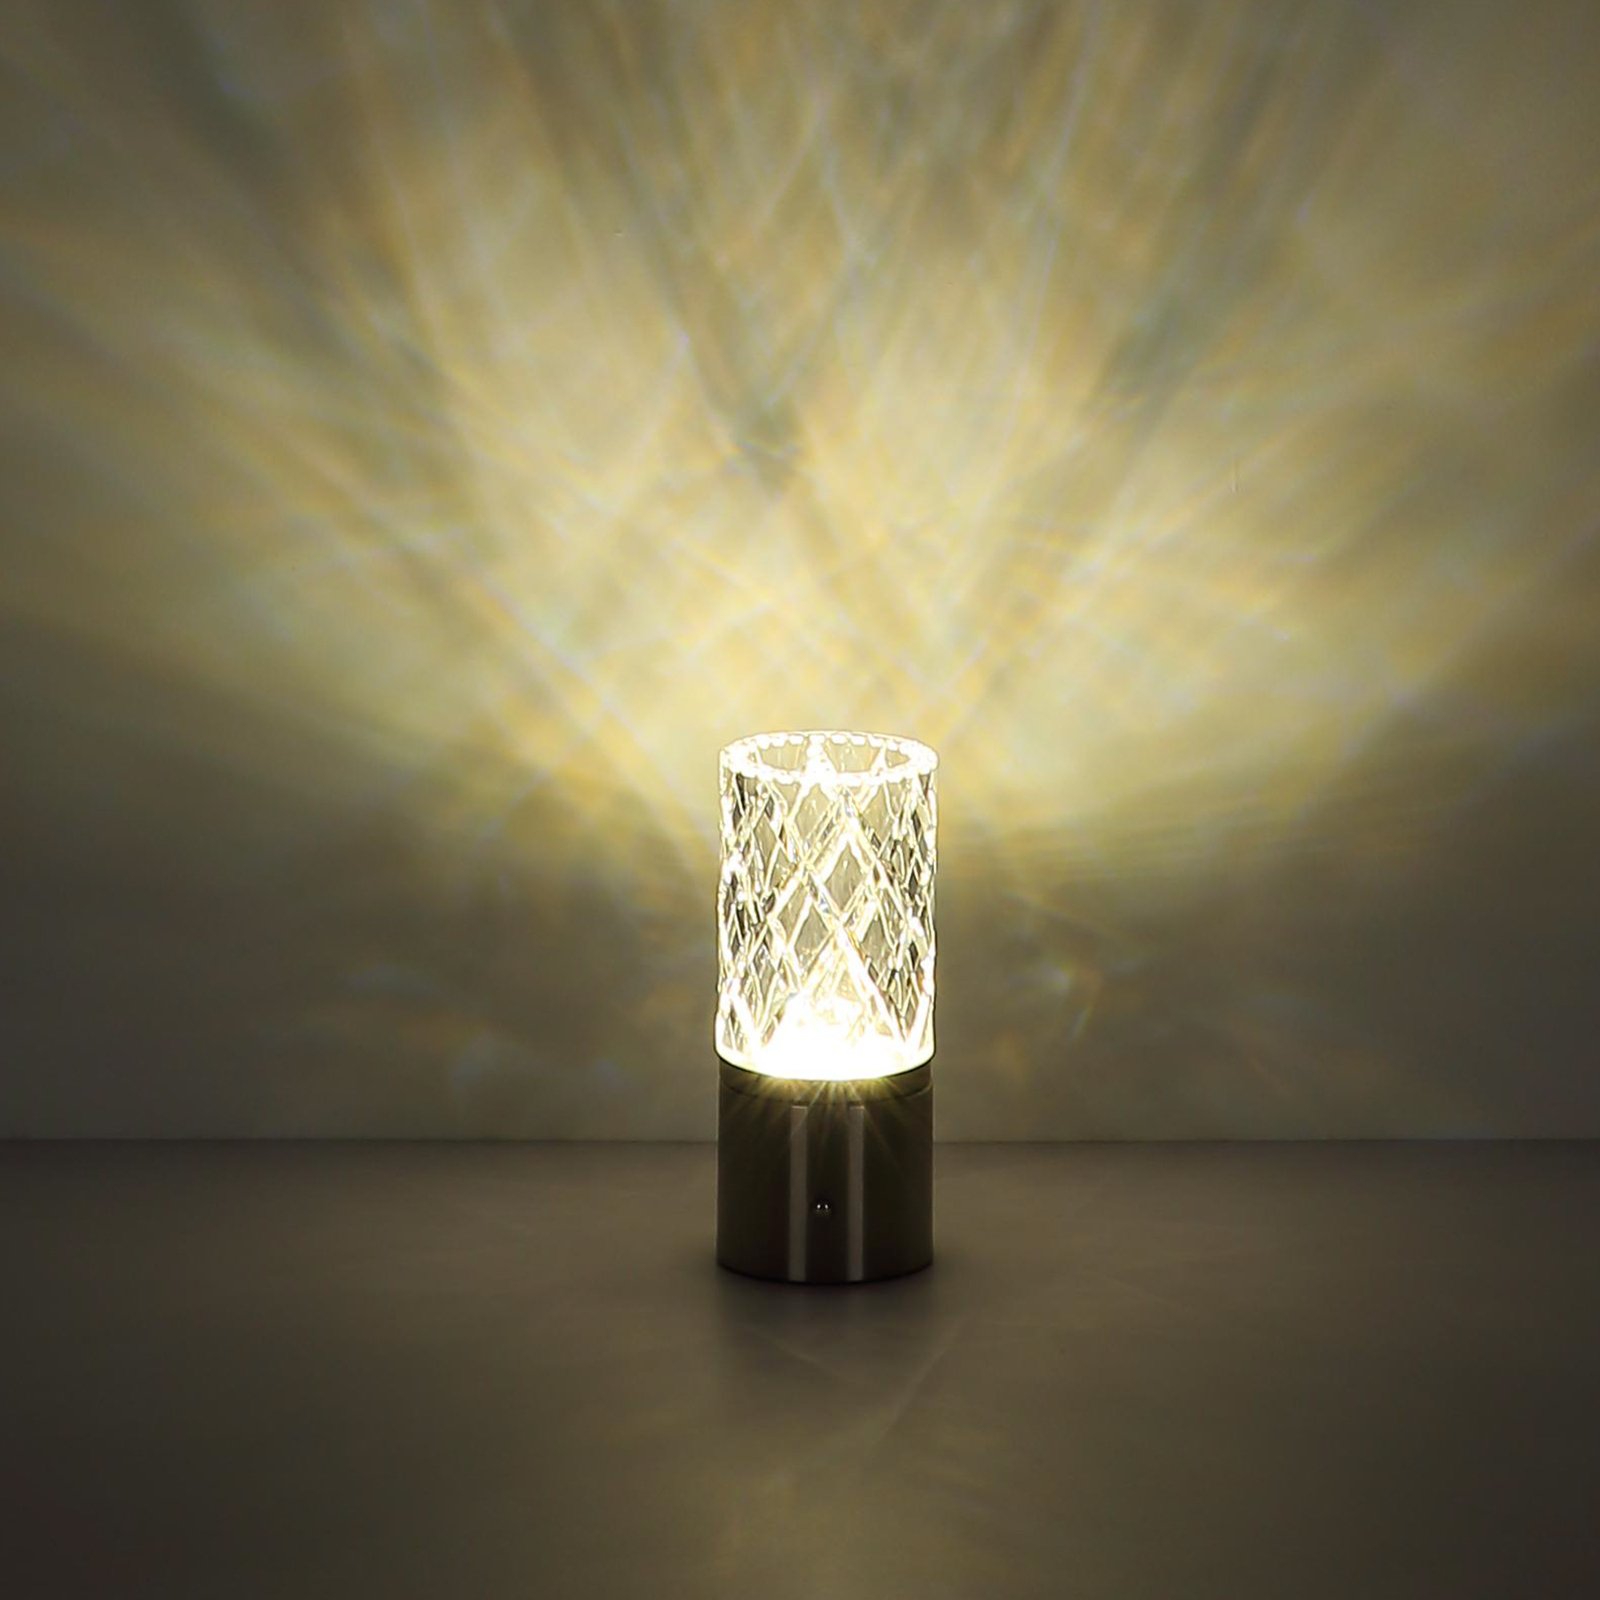 Lampe de table LED rechargeable Lunki, couleur laiton, hauteur 19 cm, CCT